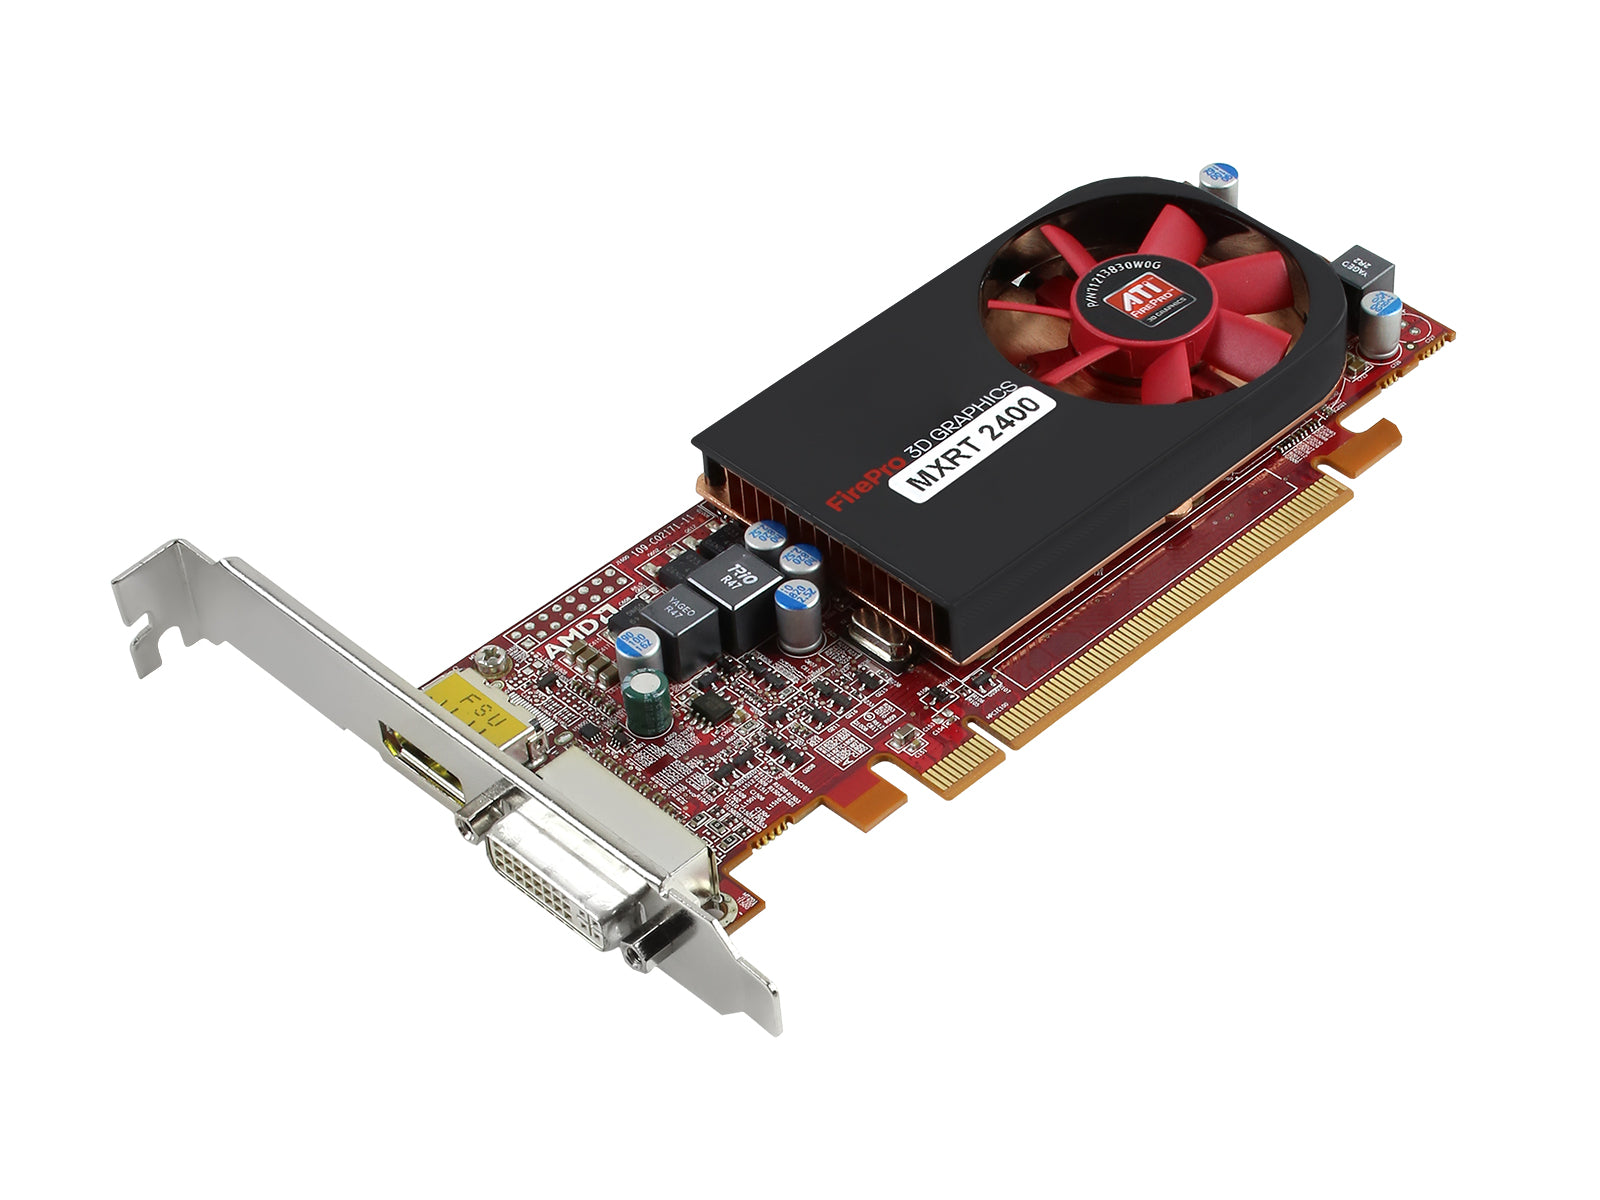 Barco MXRT-2400 512MB PCIe 그래픽 카드(K9305035) Monitors.com